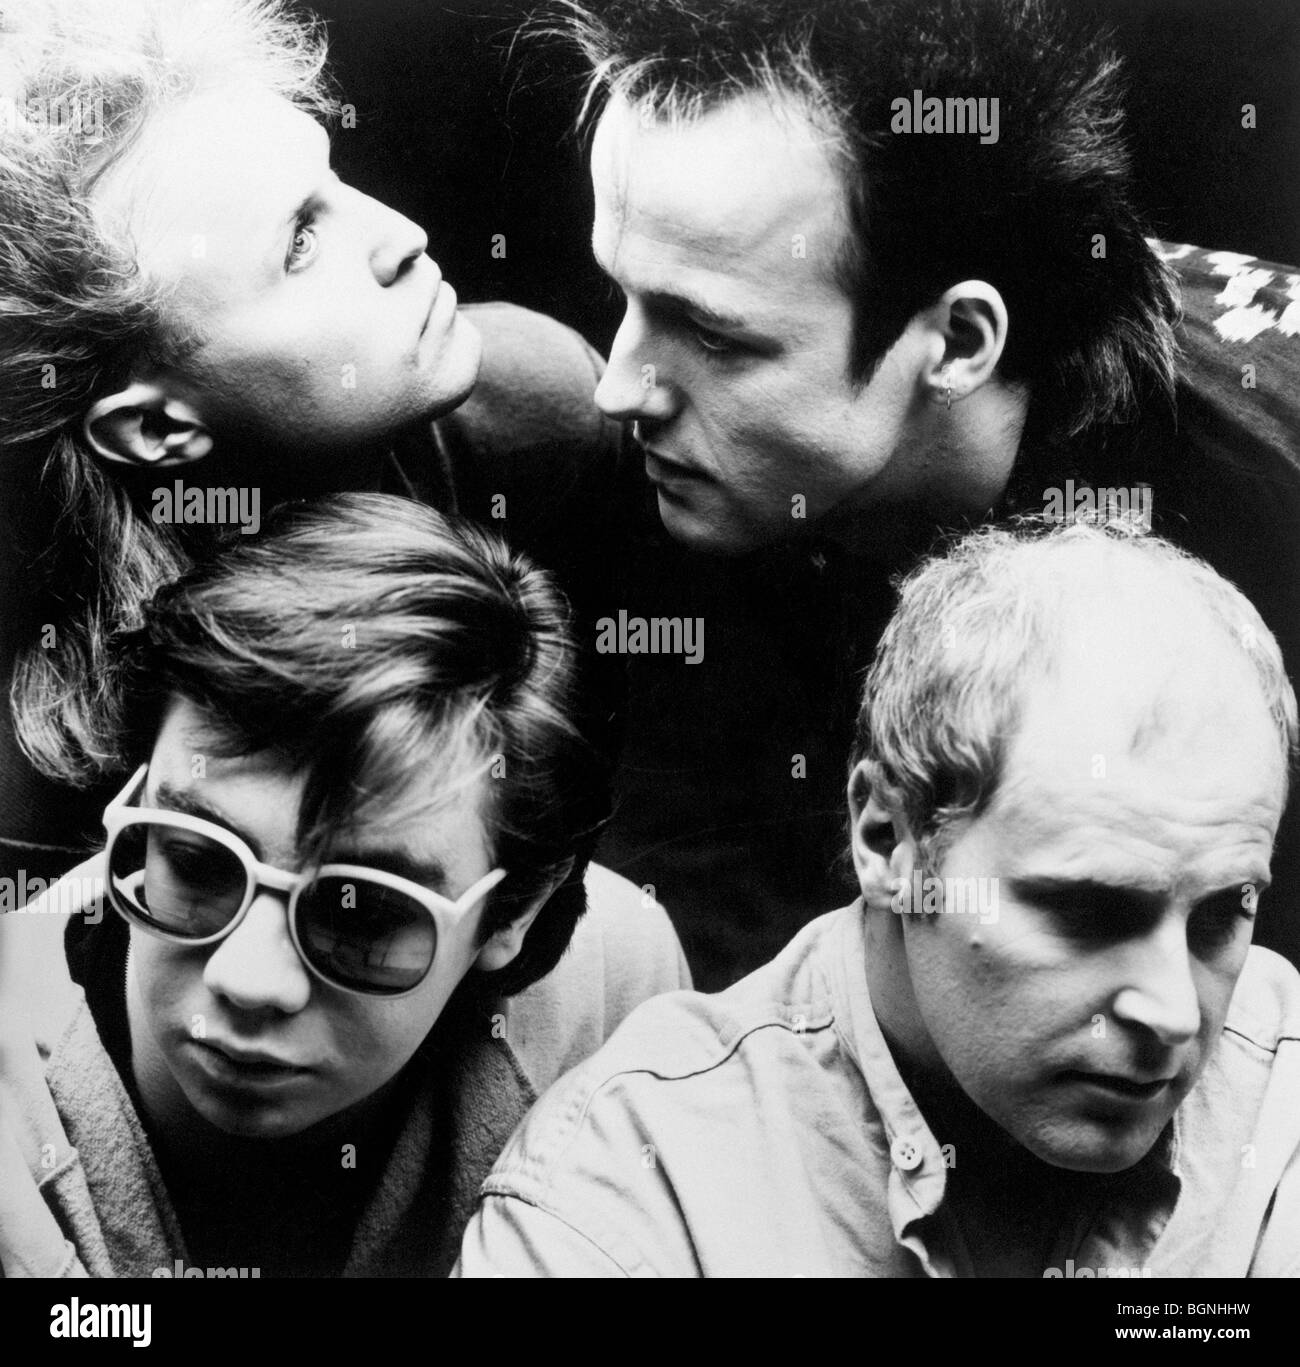 Una bandada de gaviotas - foto promocional del grupo de pop británico en 1982 Foto de stock